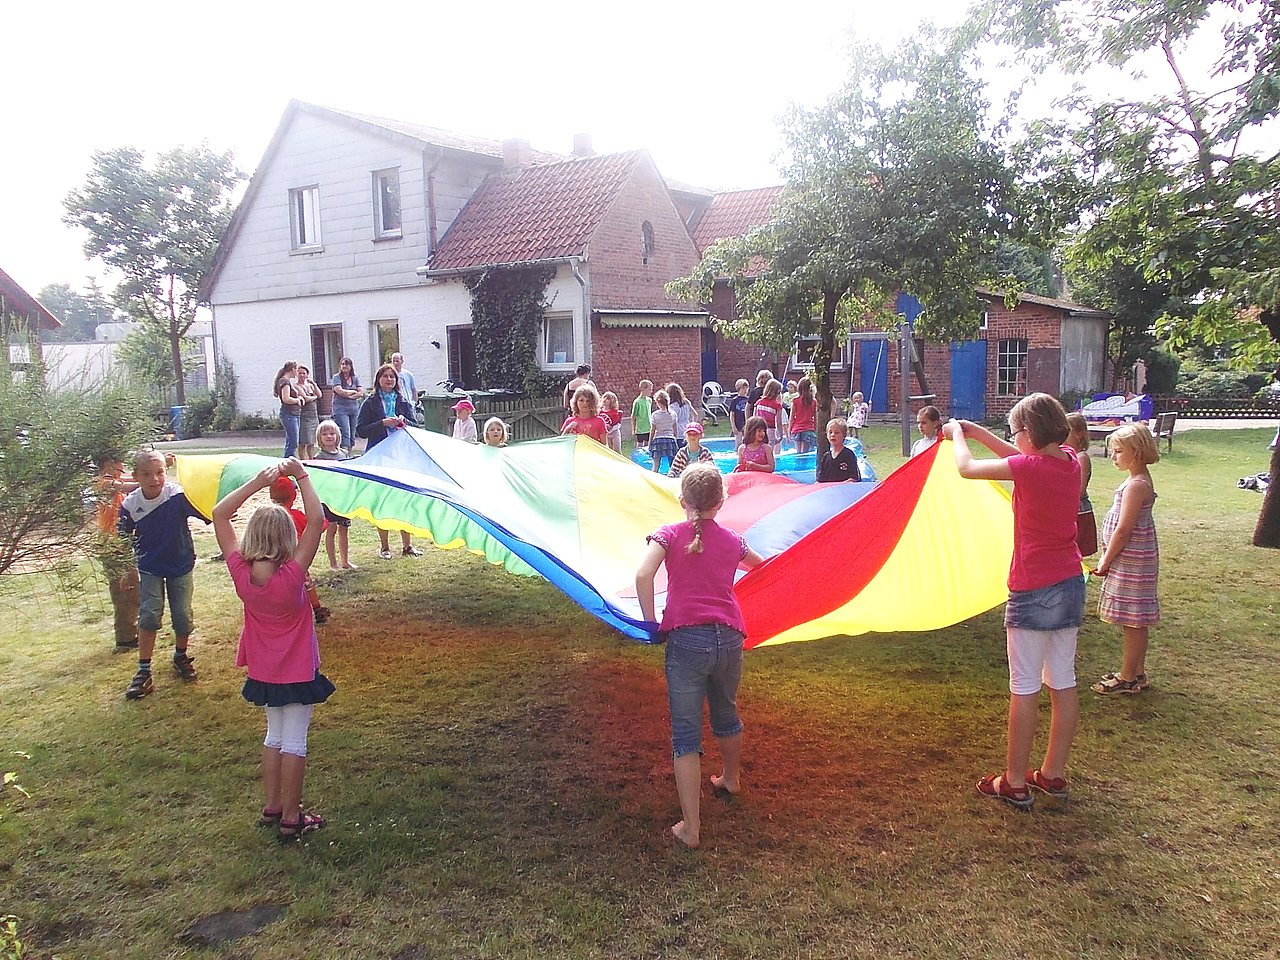 Foto von spielenden Kindern mit einer großen Stoffplane